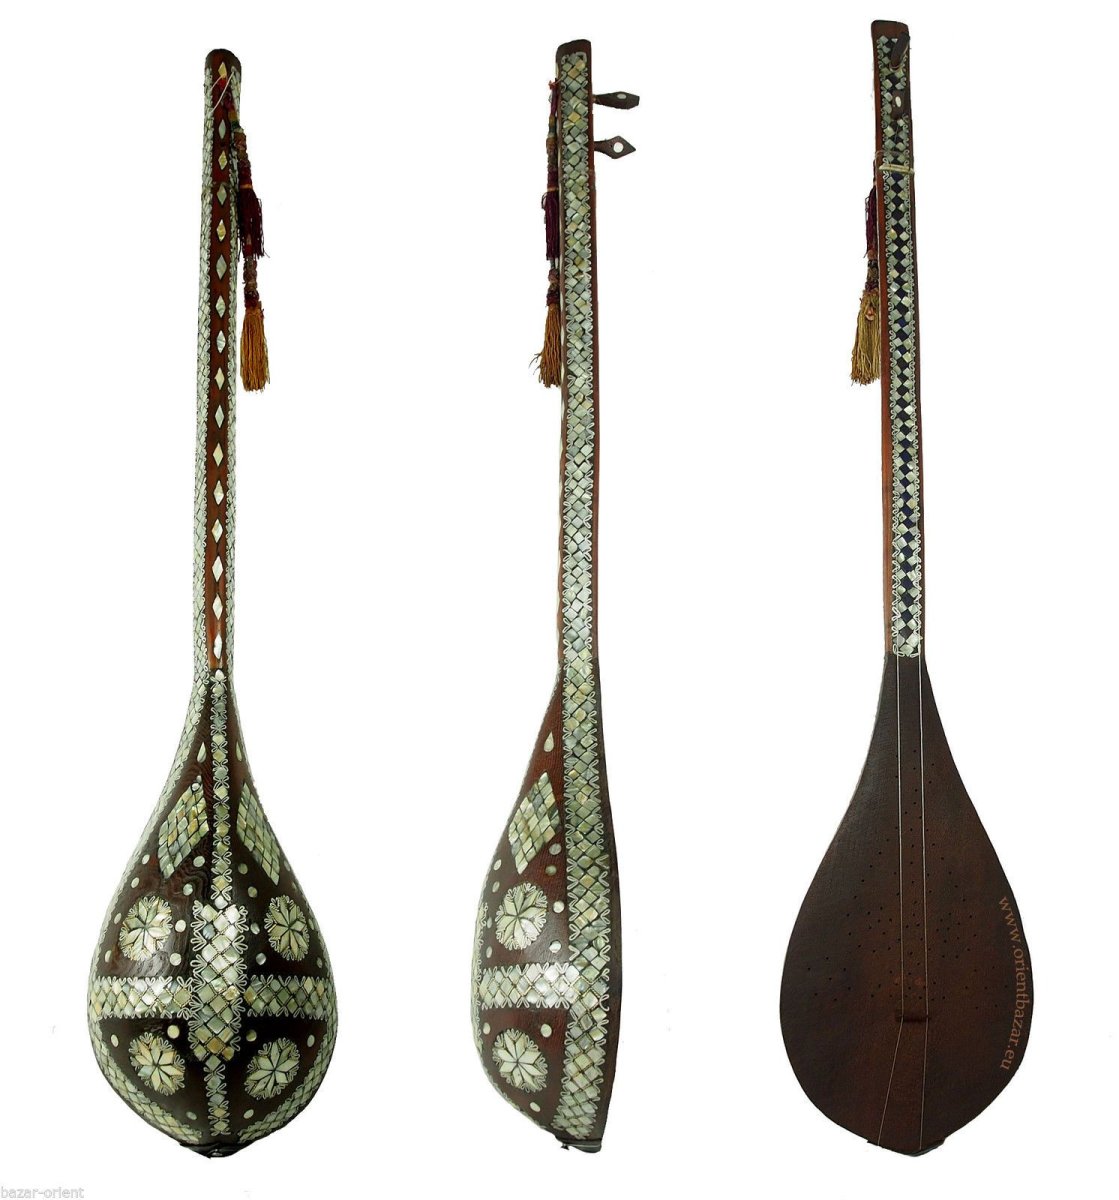 Узбекские музыкальные инструменты дутар